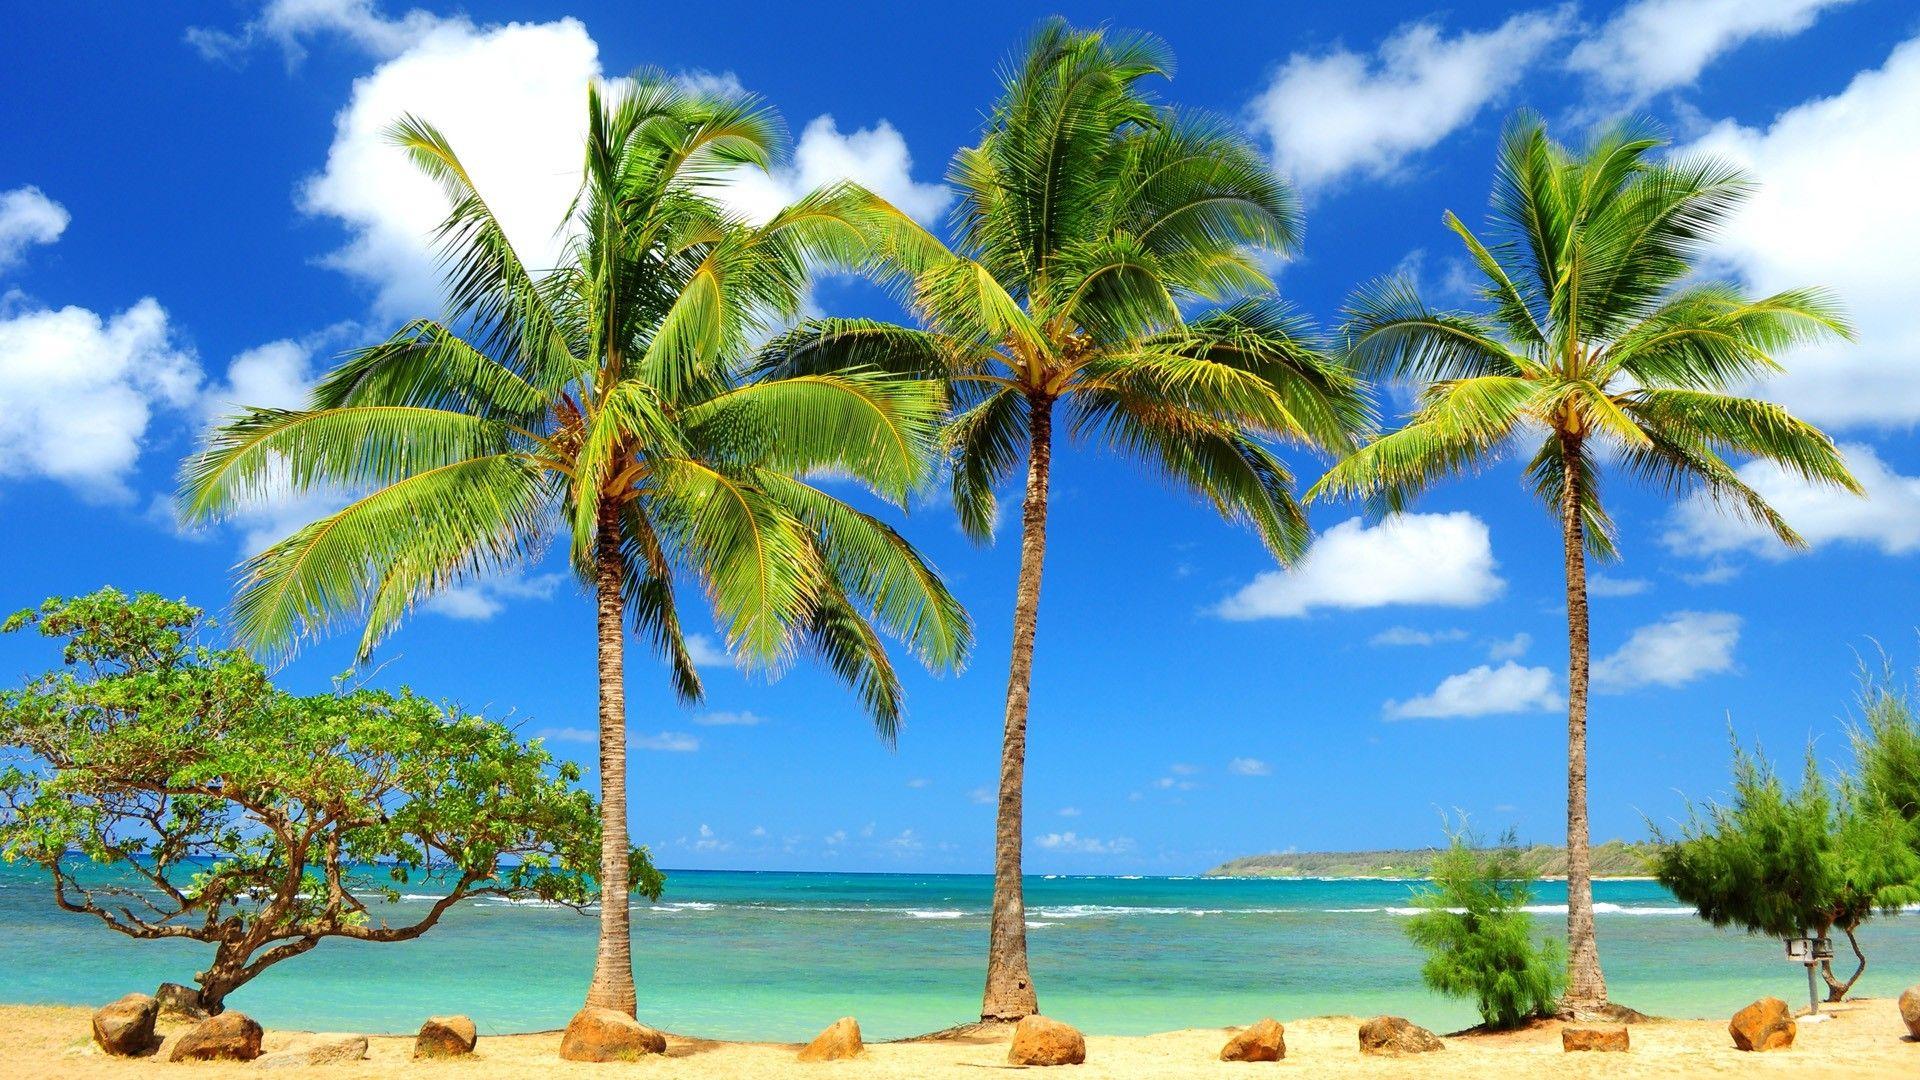 Tropical Beach Paradise HD desktop wallpapers : Widescreen : High